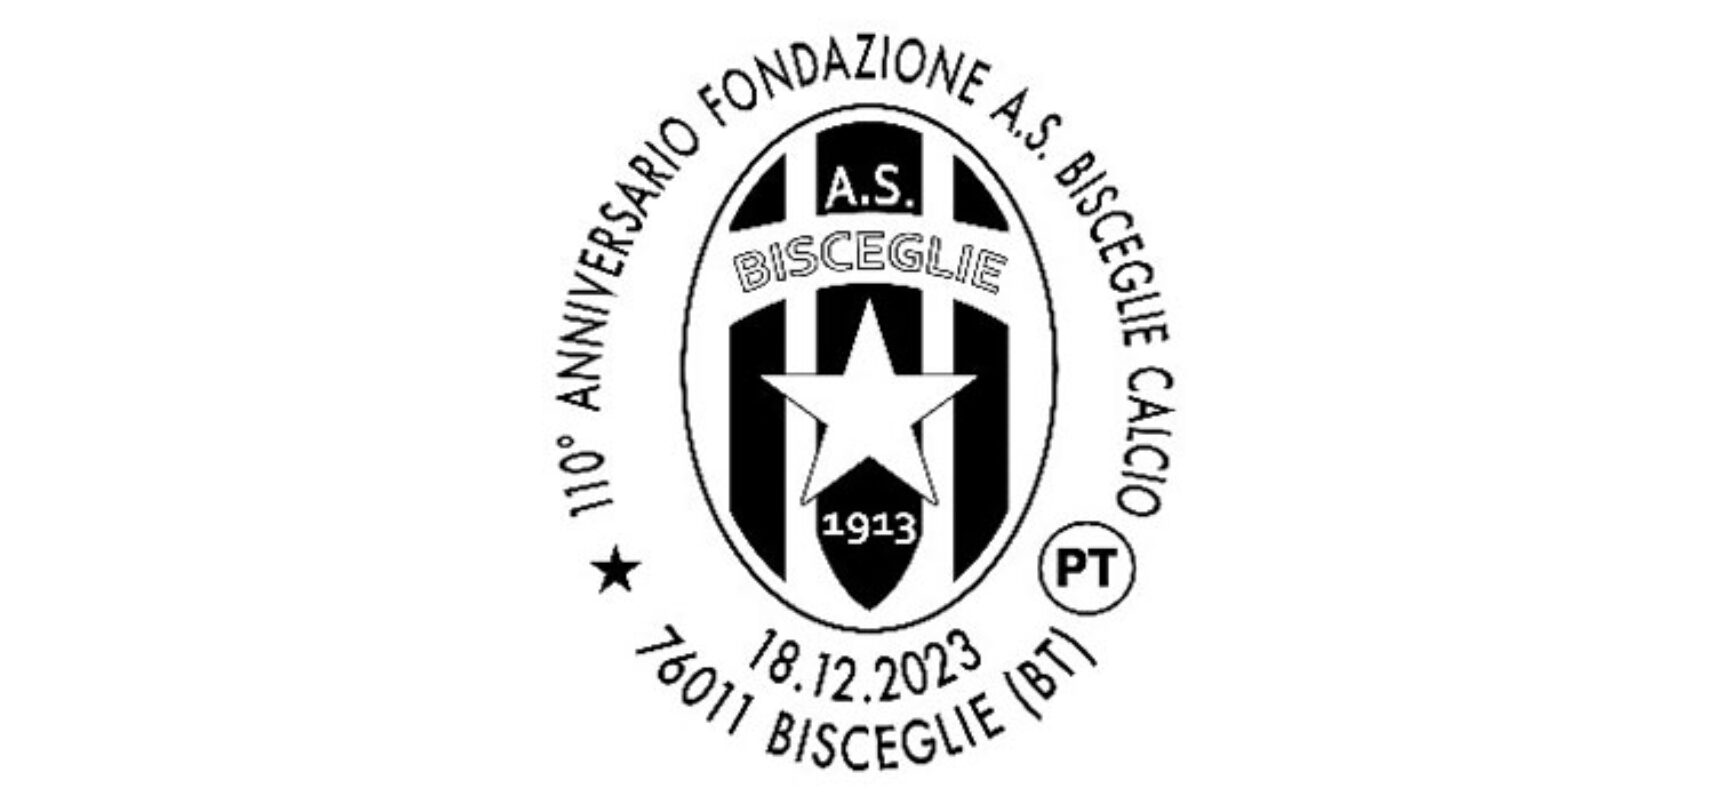 Poste Italiane attiva l’annullo filatelico per il 110° anniversario del Bisceglie calcio